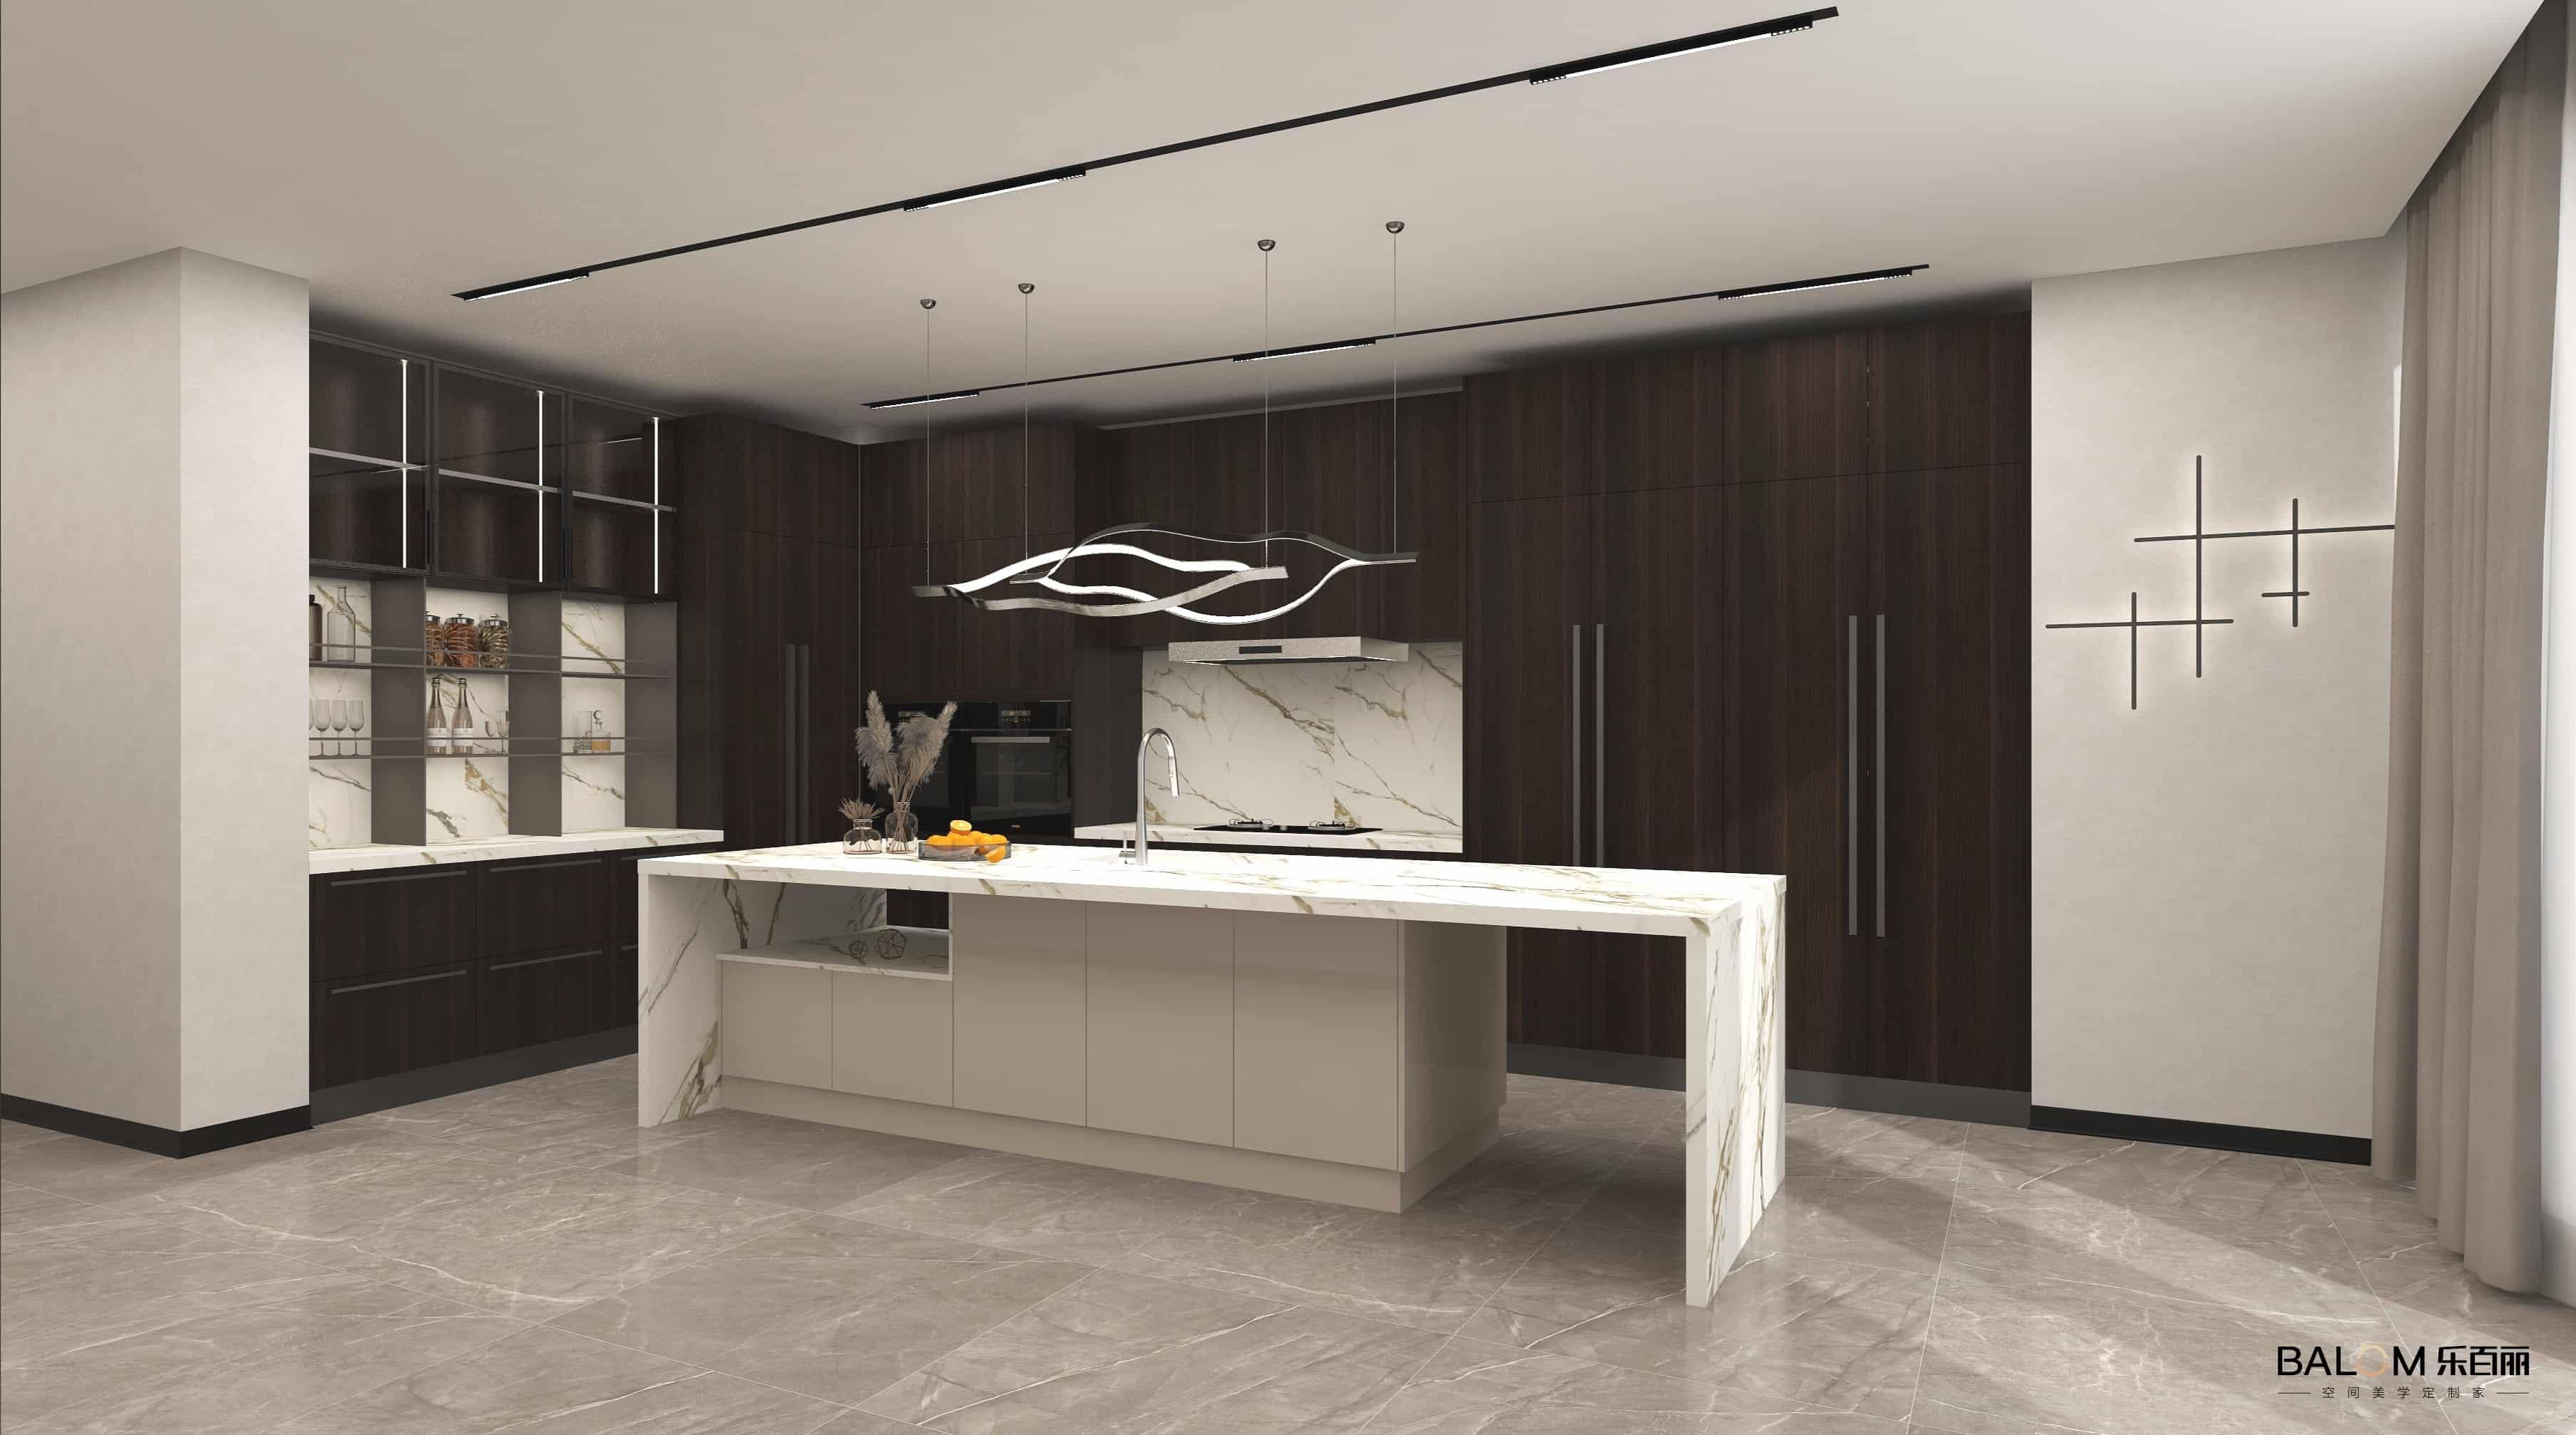 Showroom personalizzato dell'armadio da cucina in dieci spazi dell'Arabia Saudita
